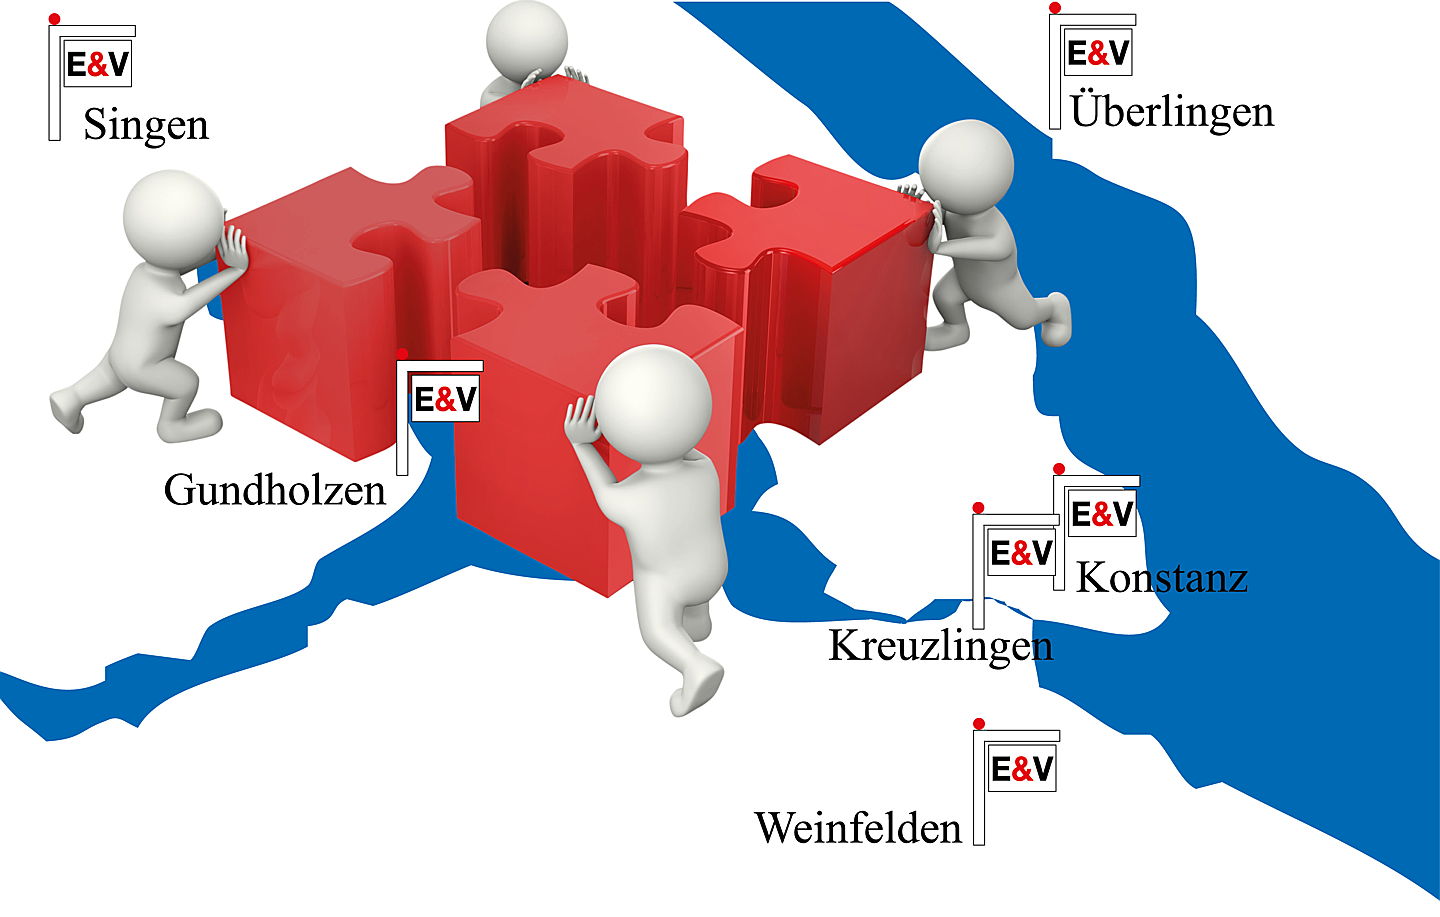  Konstanz
- Zusammenschluss Überlingen Grafik Puzzzle.jpg